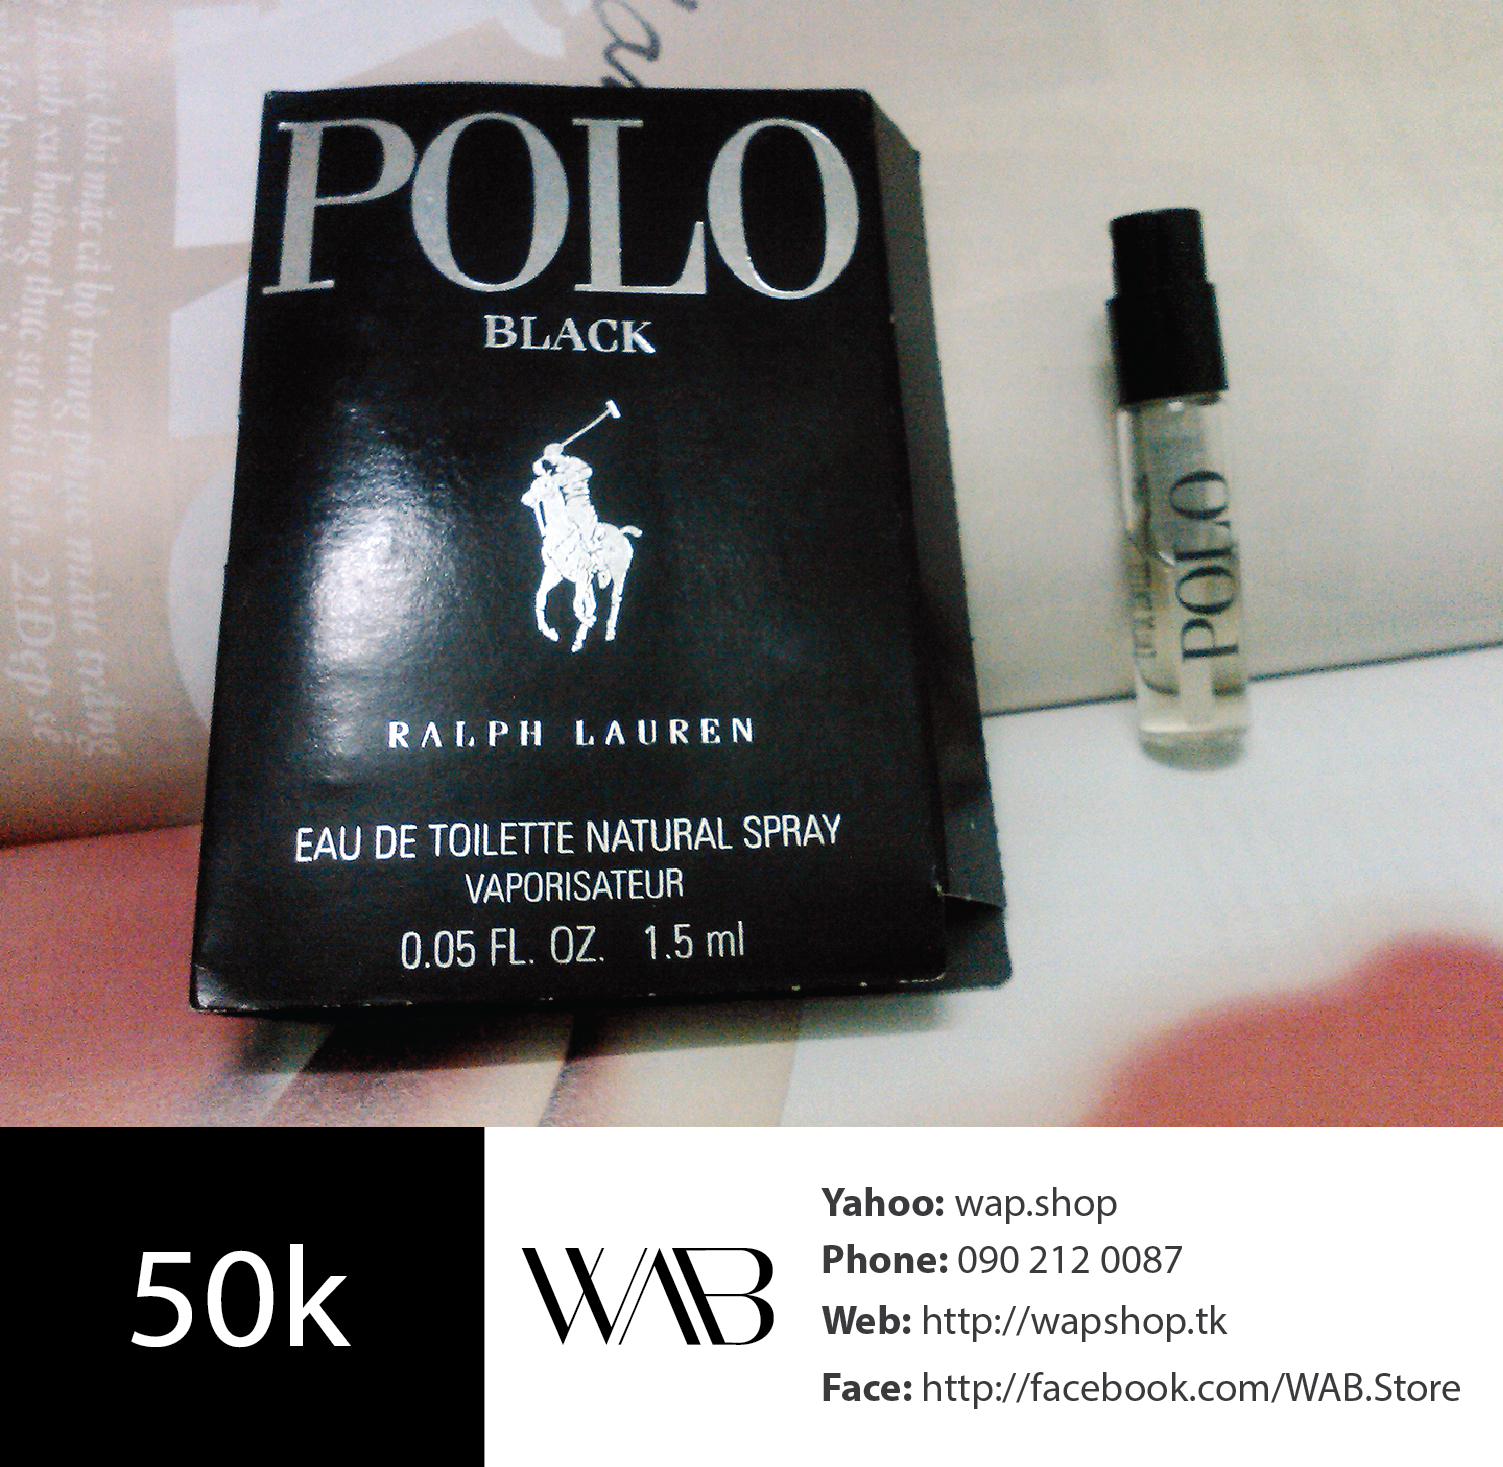 Polo Black